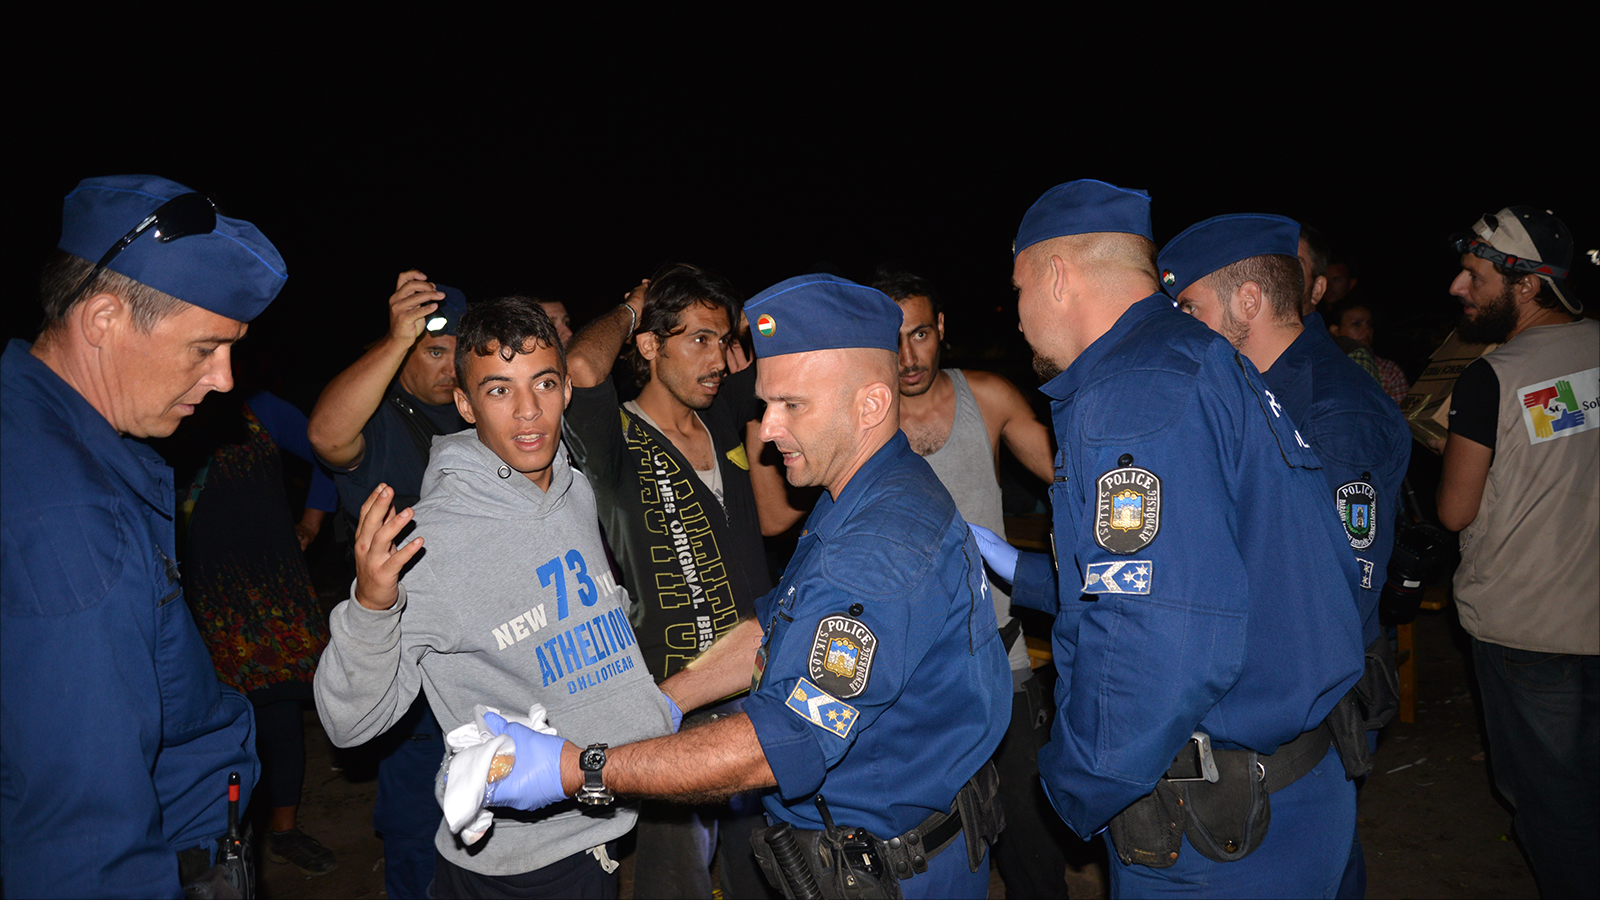 شرطة مجريون خلال تفتيش لاجئين عرب بمدينة روسكي على الحدود مع صربيا